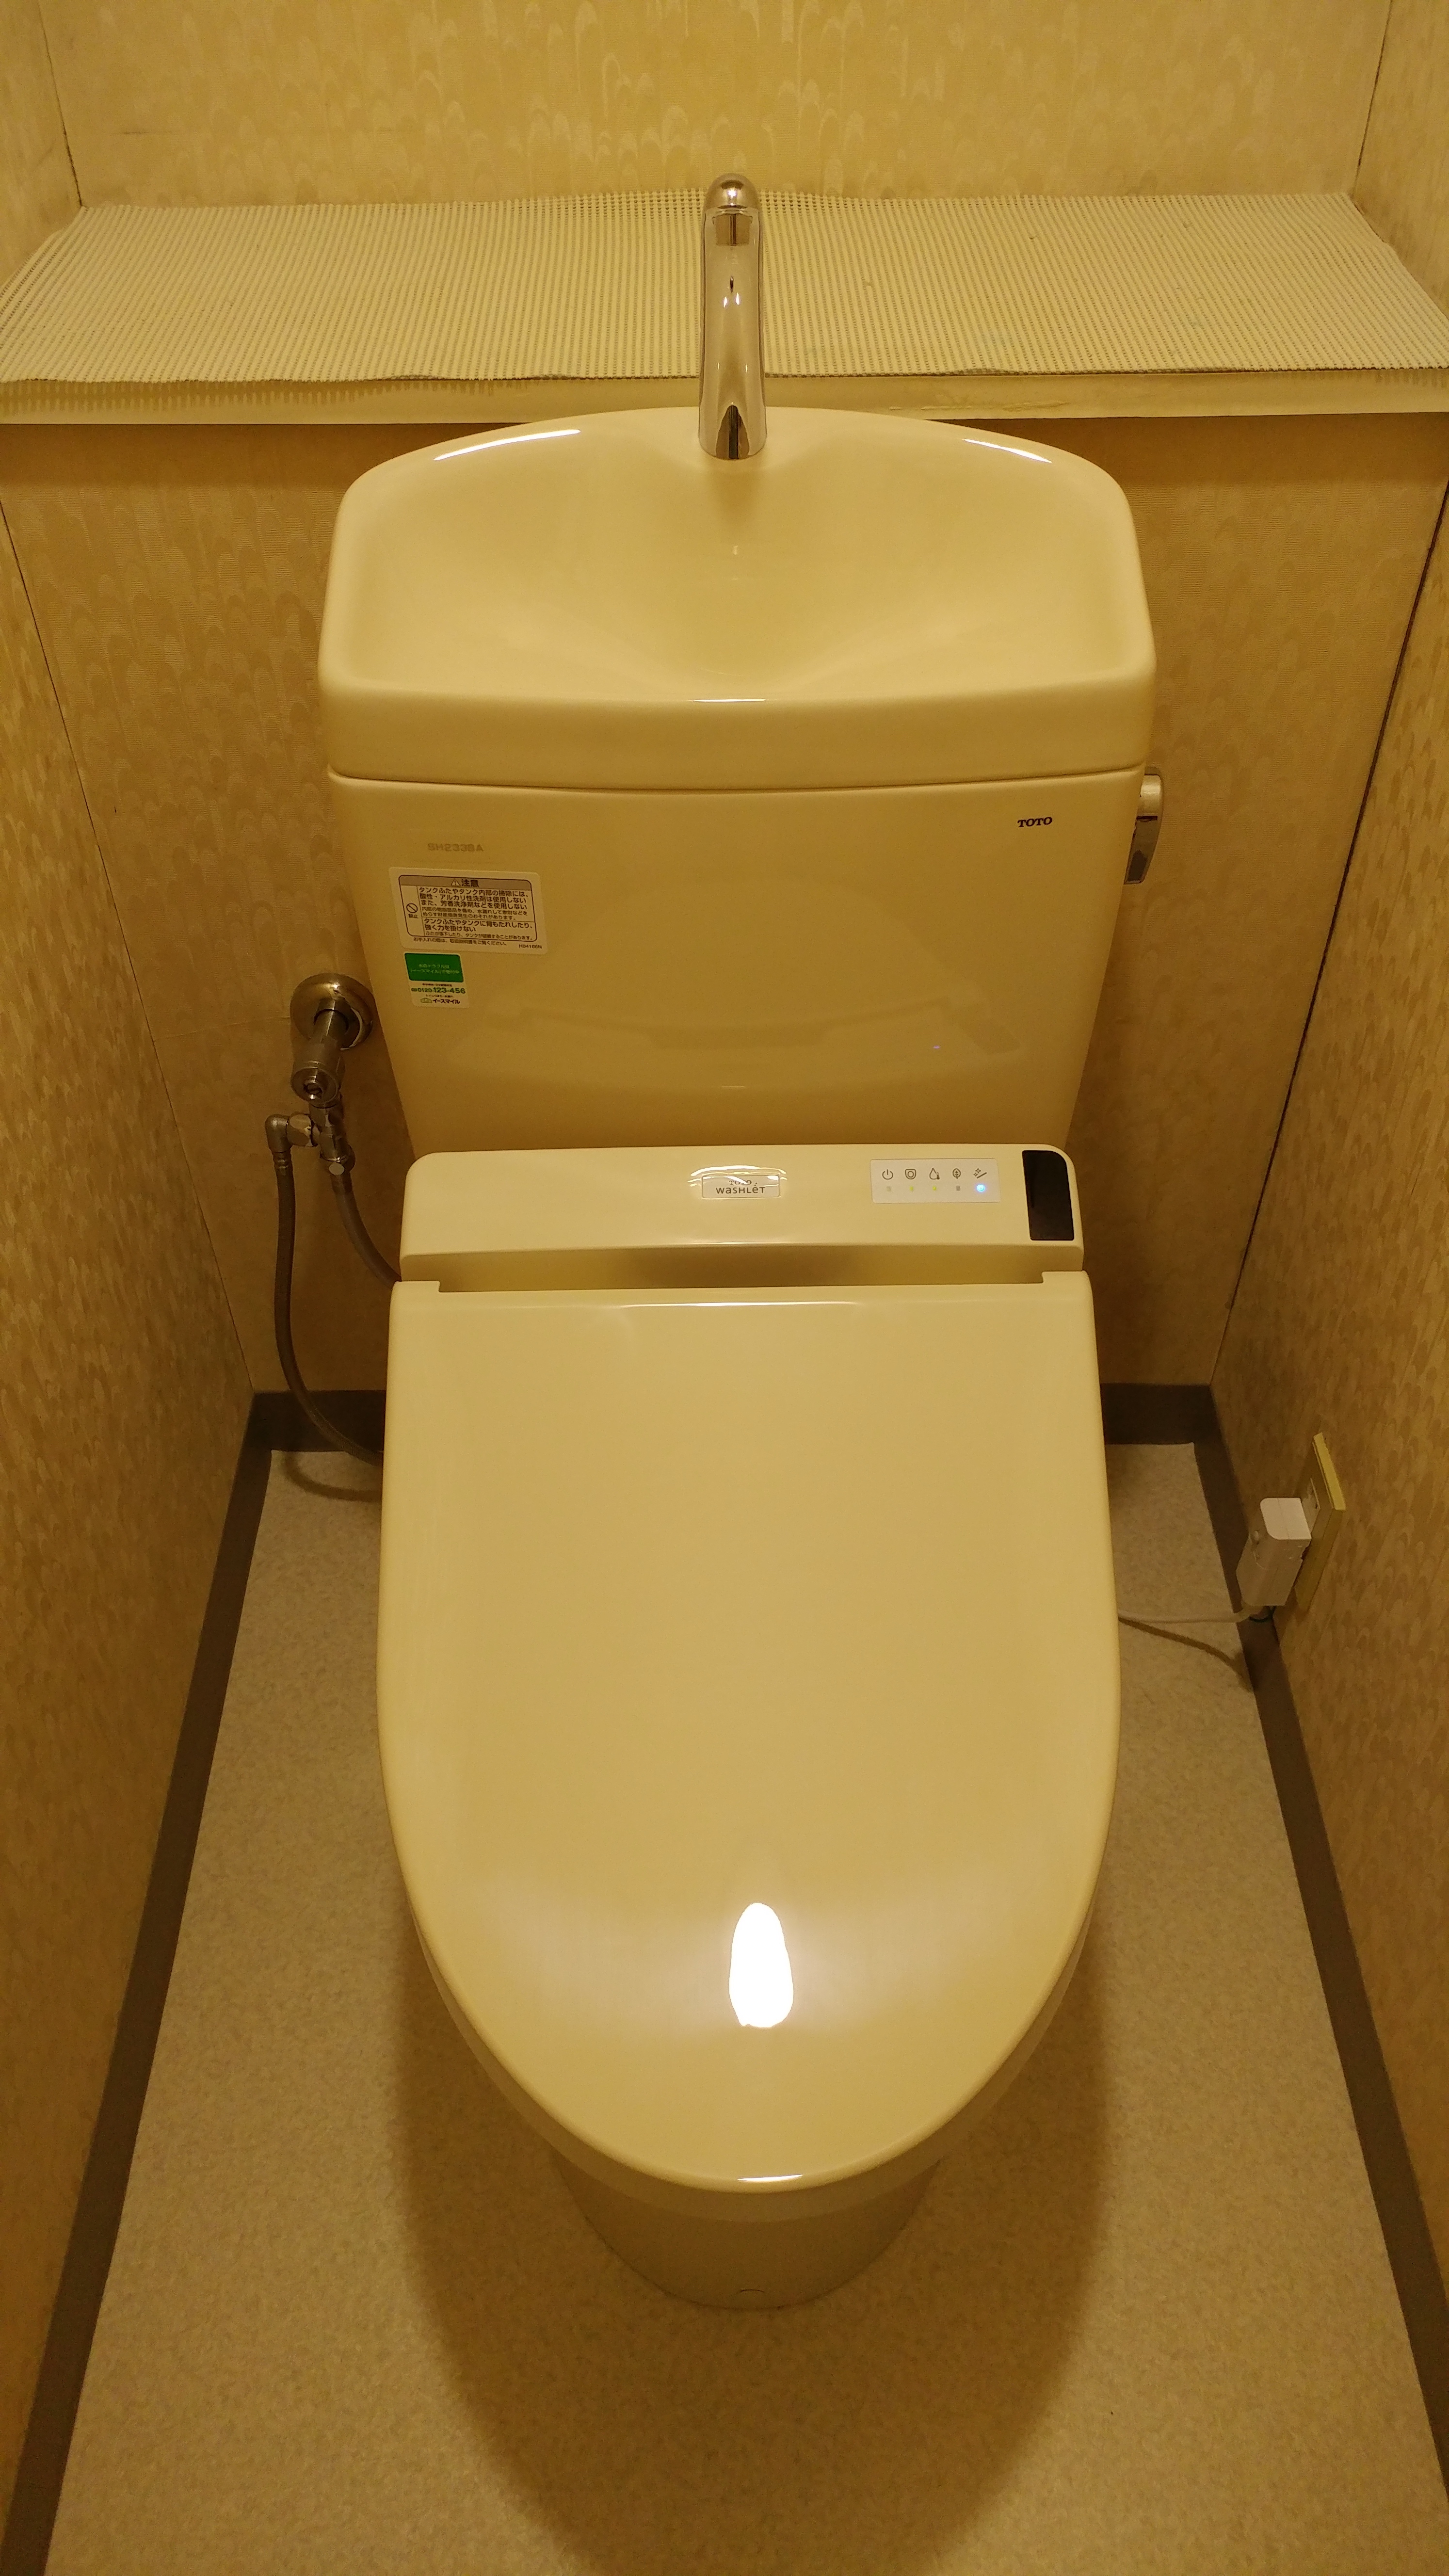 20190910_012 トイレ交換 東京都渋谷区:施工実績